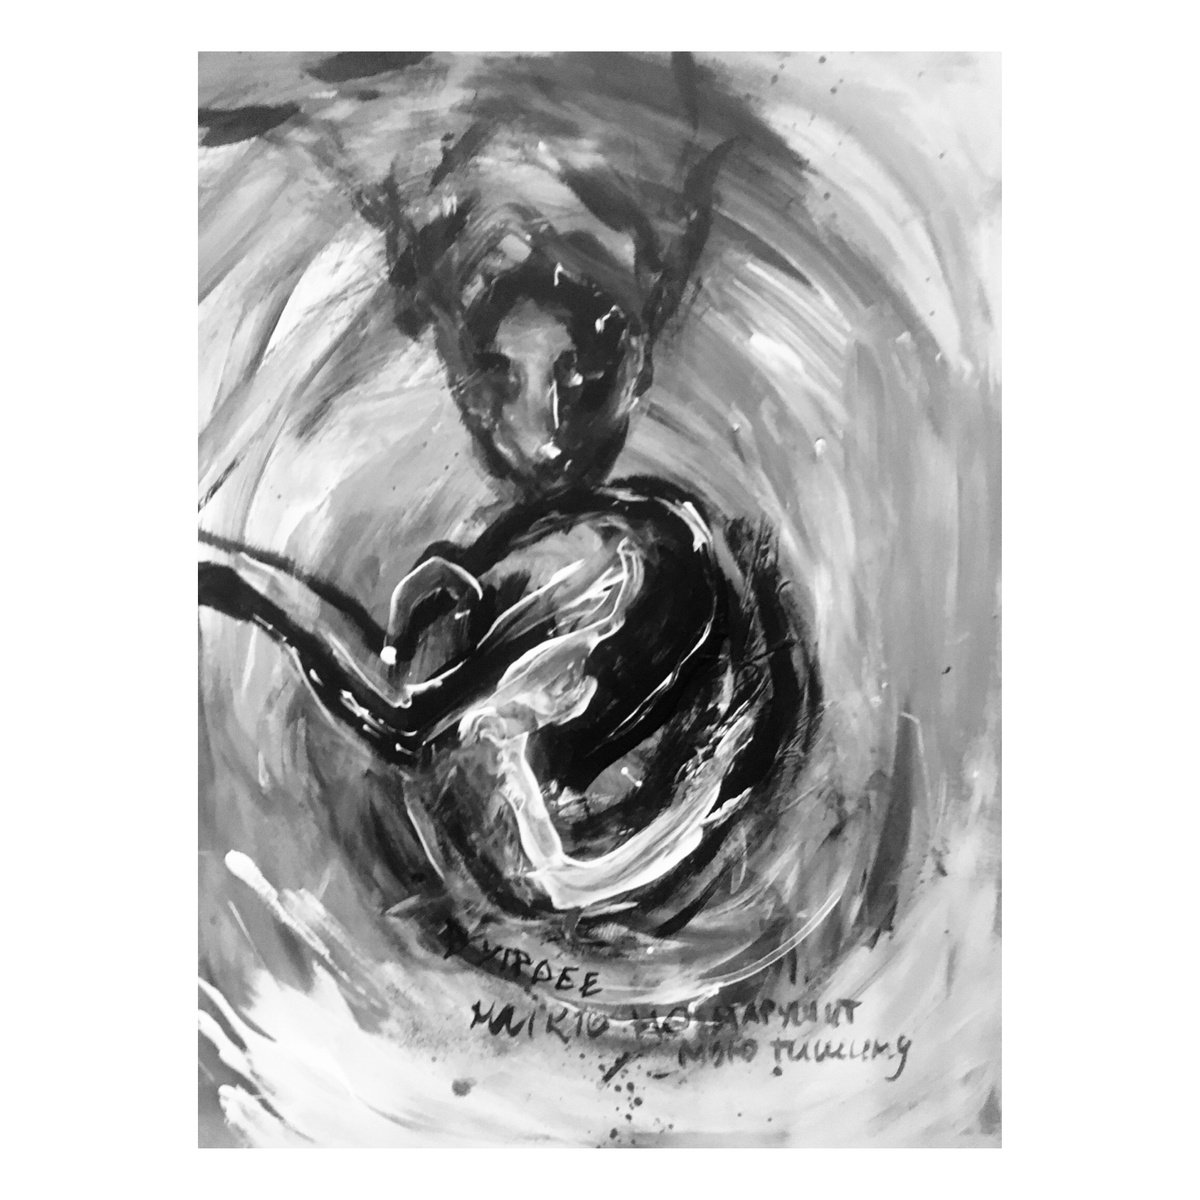 N2 - In the Womb by Mari Skakun